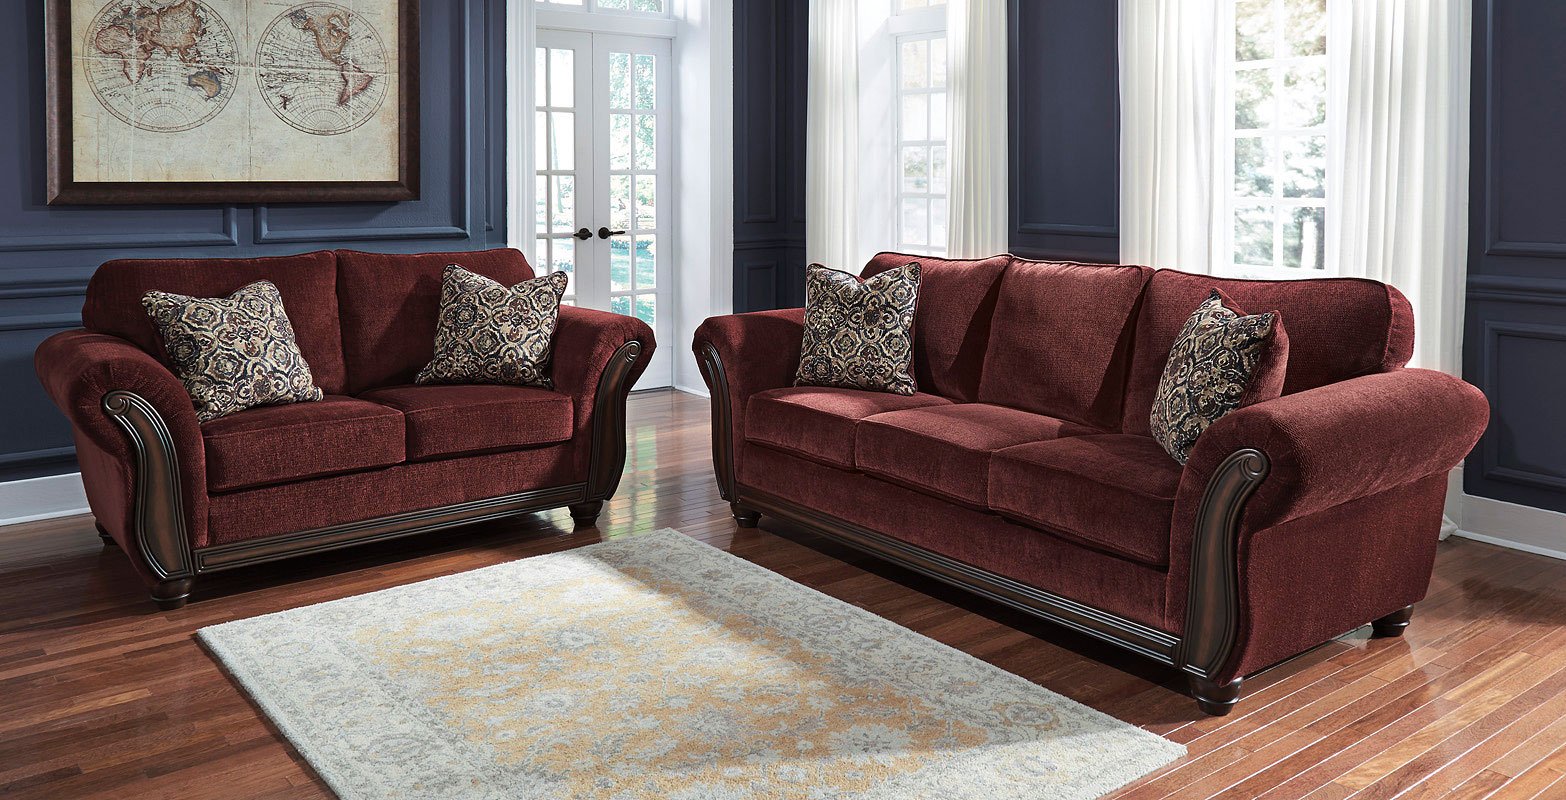 burgundy living room furniture sets